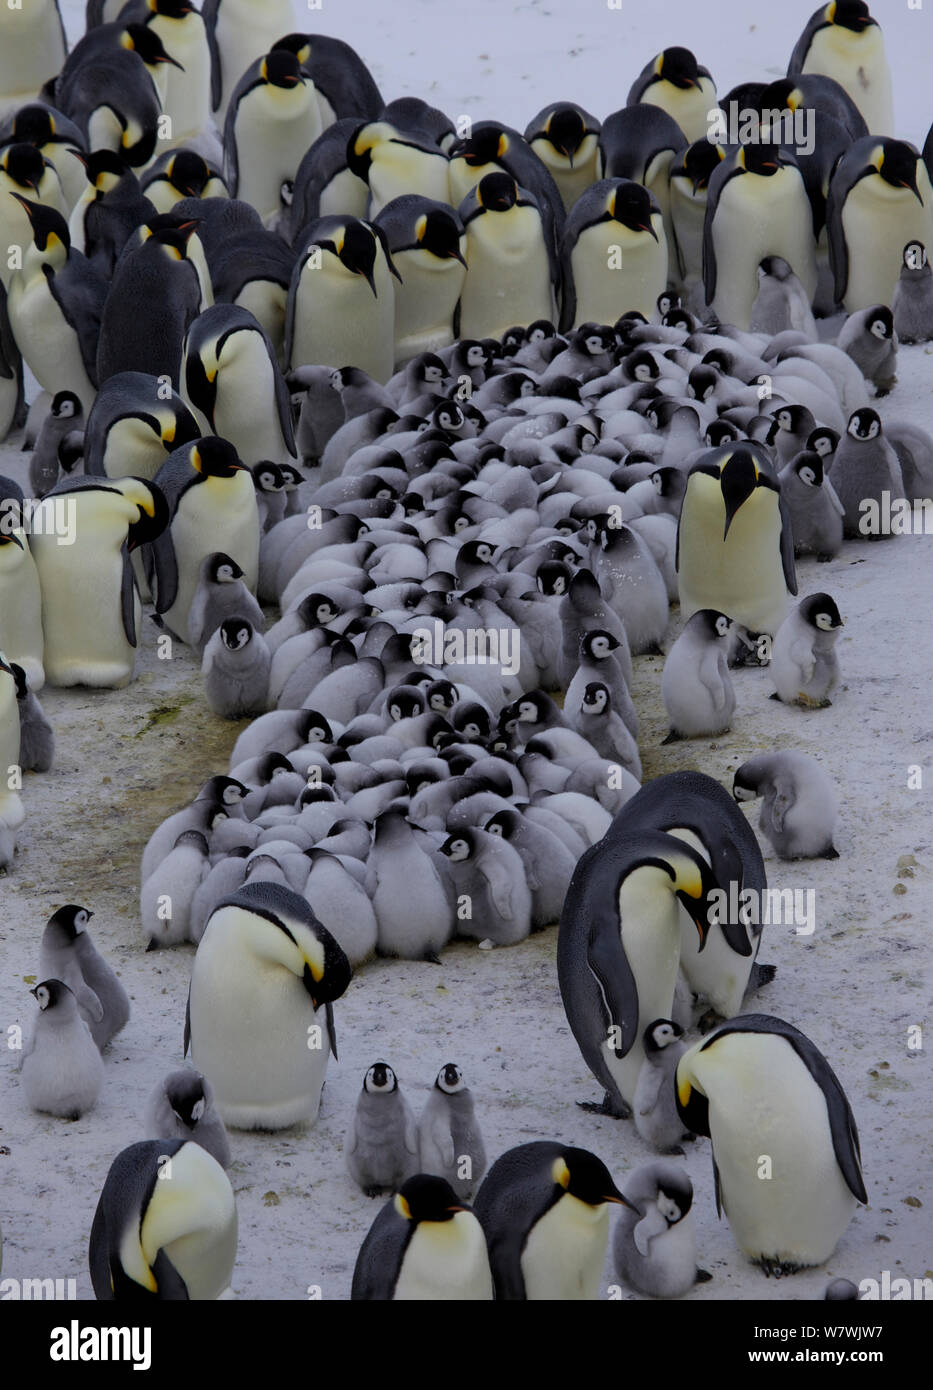 Manchot Empereur (Aptenodytes forsteri) Crèche de poussins se blottissent entourés d'adultes, l'Antarctique, septembre. Banque D'Images